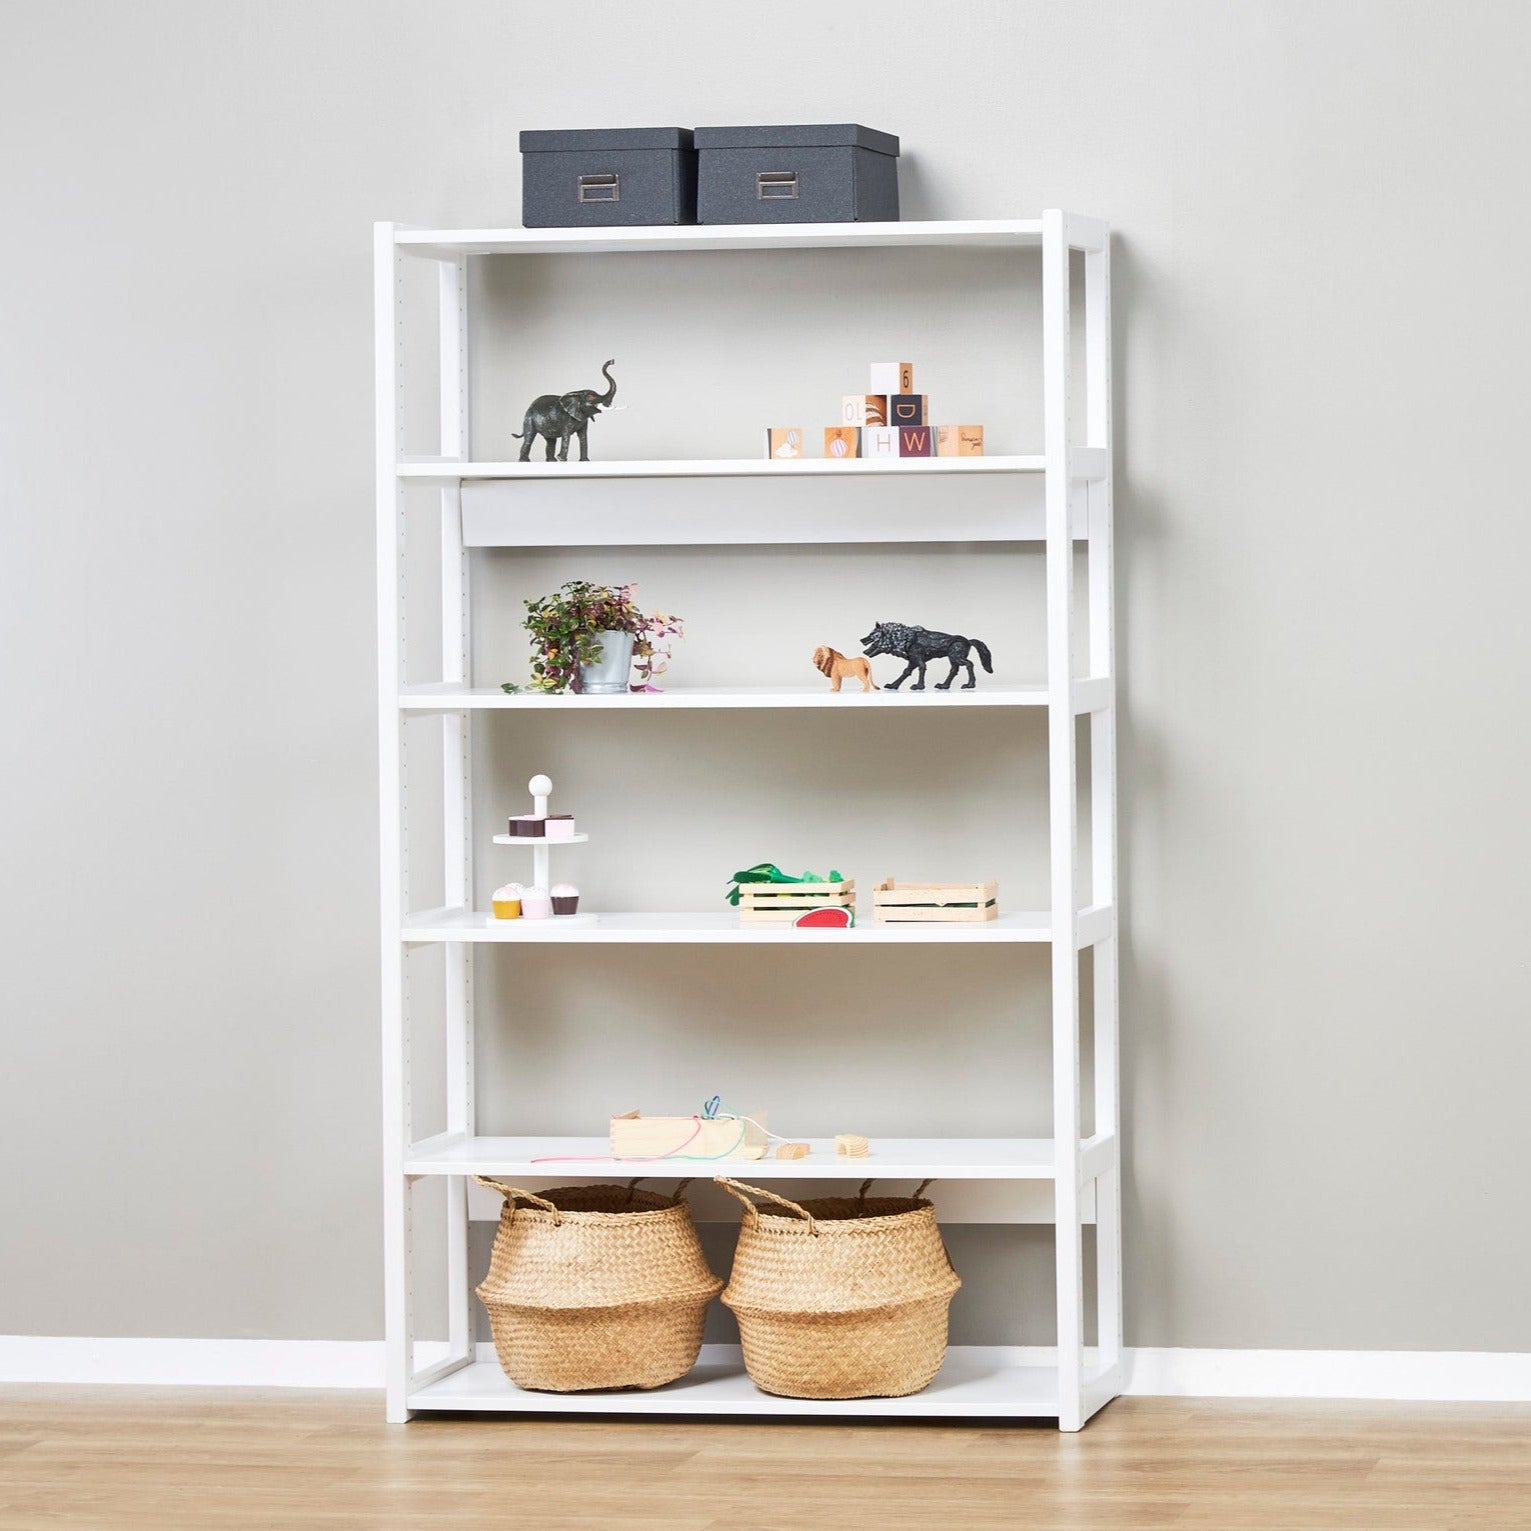 Hoppekids 'Storey' Shelving Unit - 6 Shelves (2 Shelf Sizes Available)